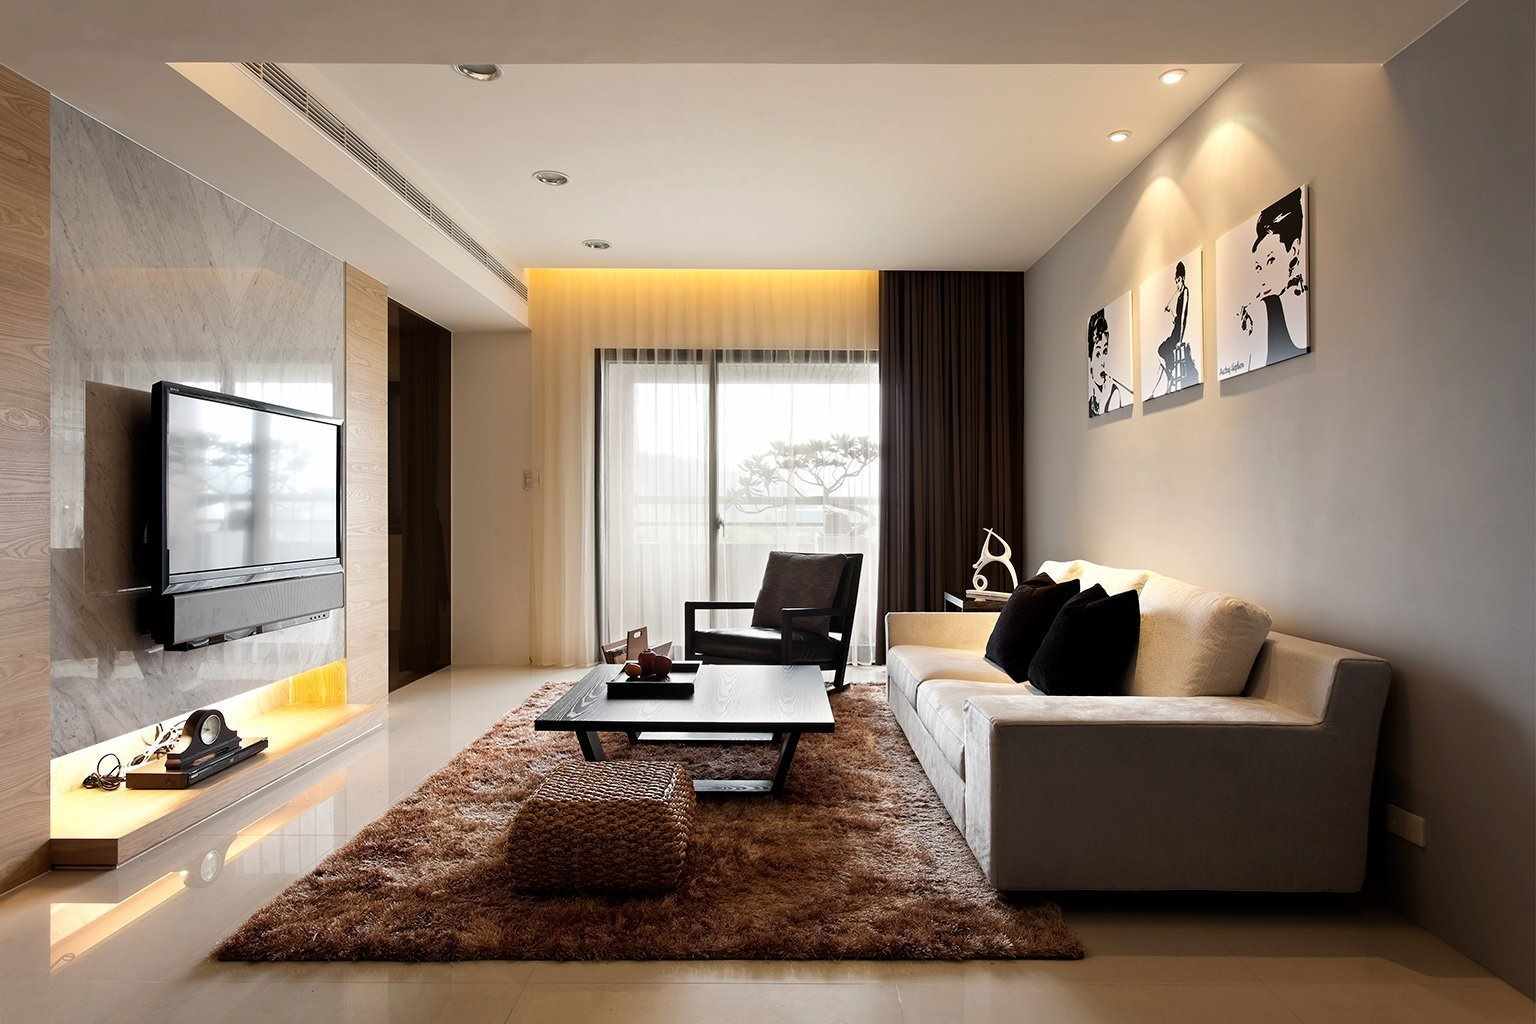 een voorbeeld van het toepassen van een ongewoon ontwerp van een woonkamer in de stijl van minimalisme